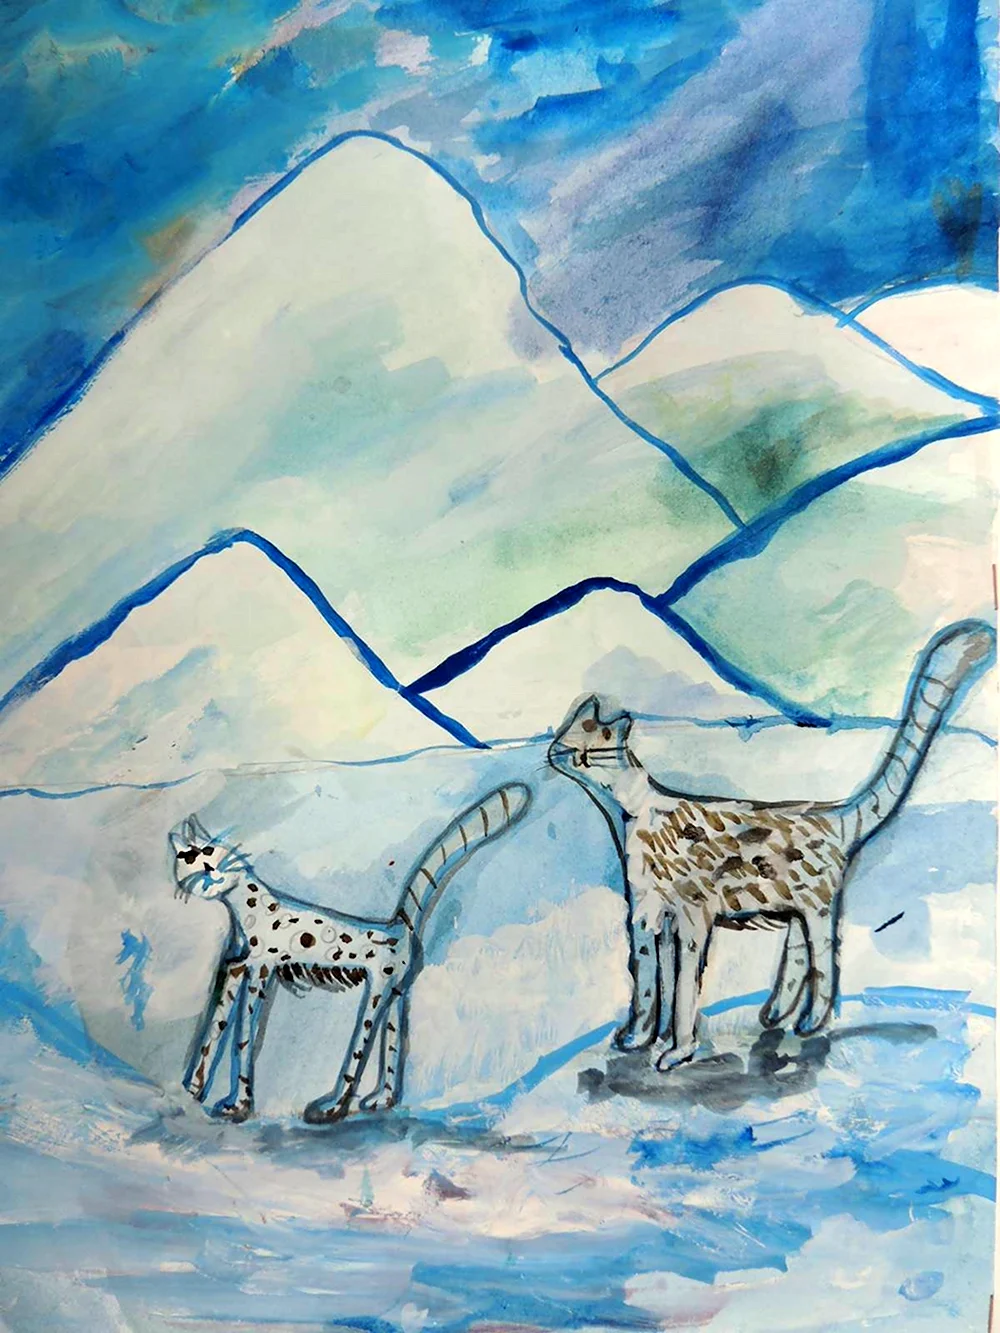 Снежный Барс рисунок для детей